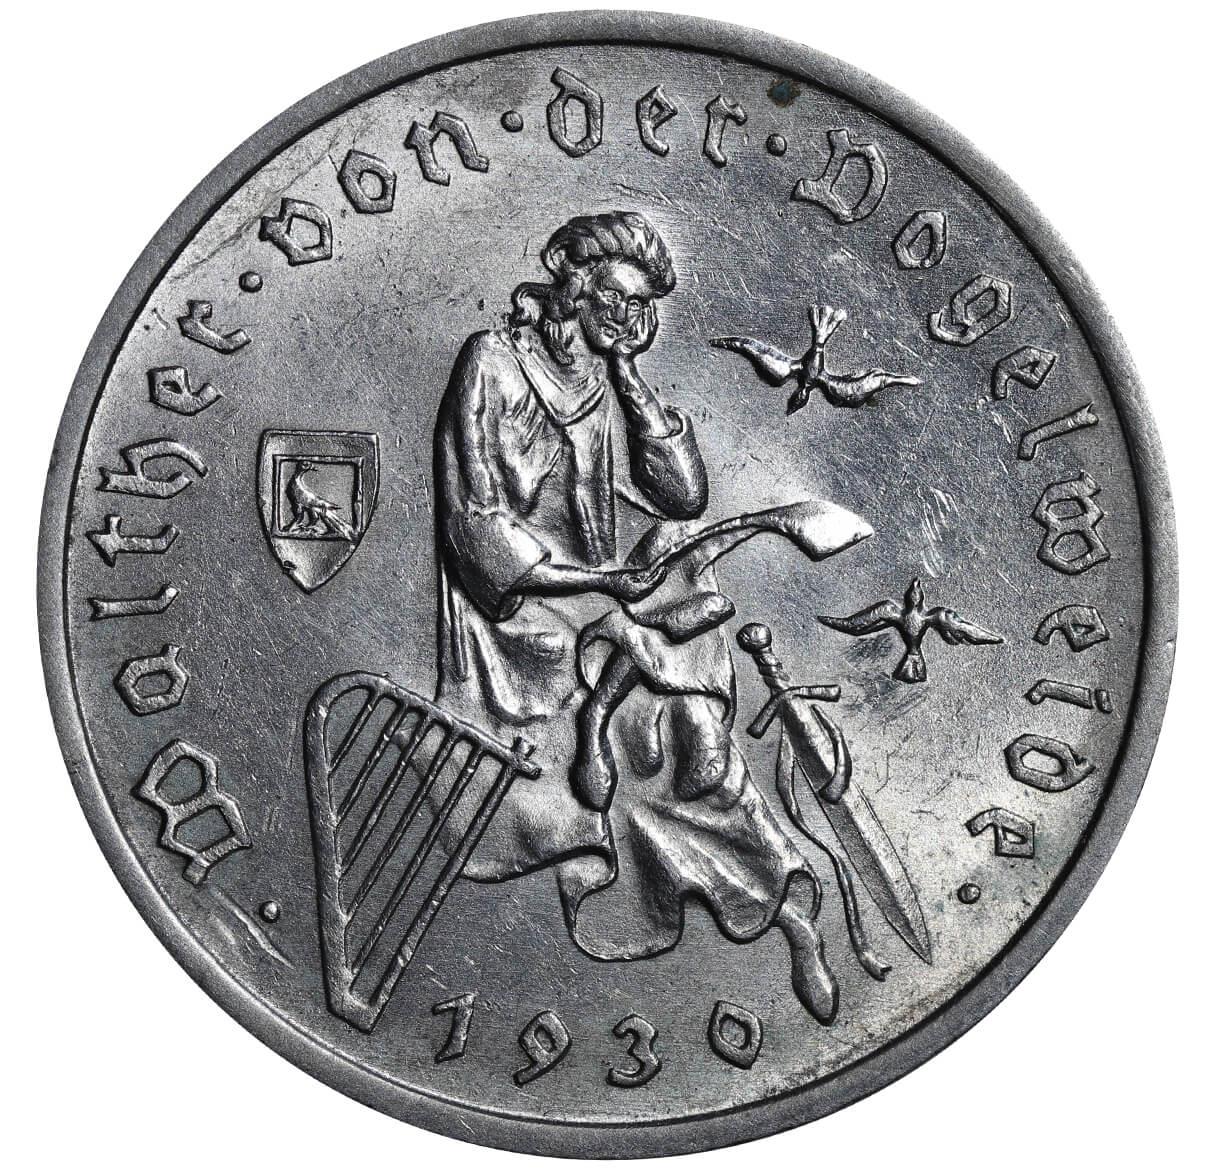 Germany, 3 Reichsmark, 1930 year, A, 700th Anniversary - Death of Von Der Vogelweide - Image 2 of 3